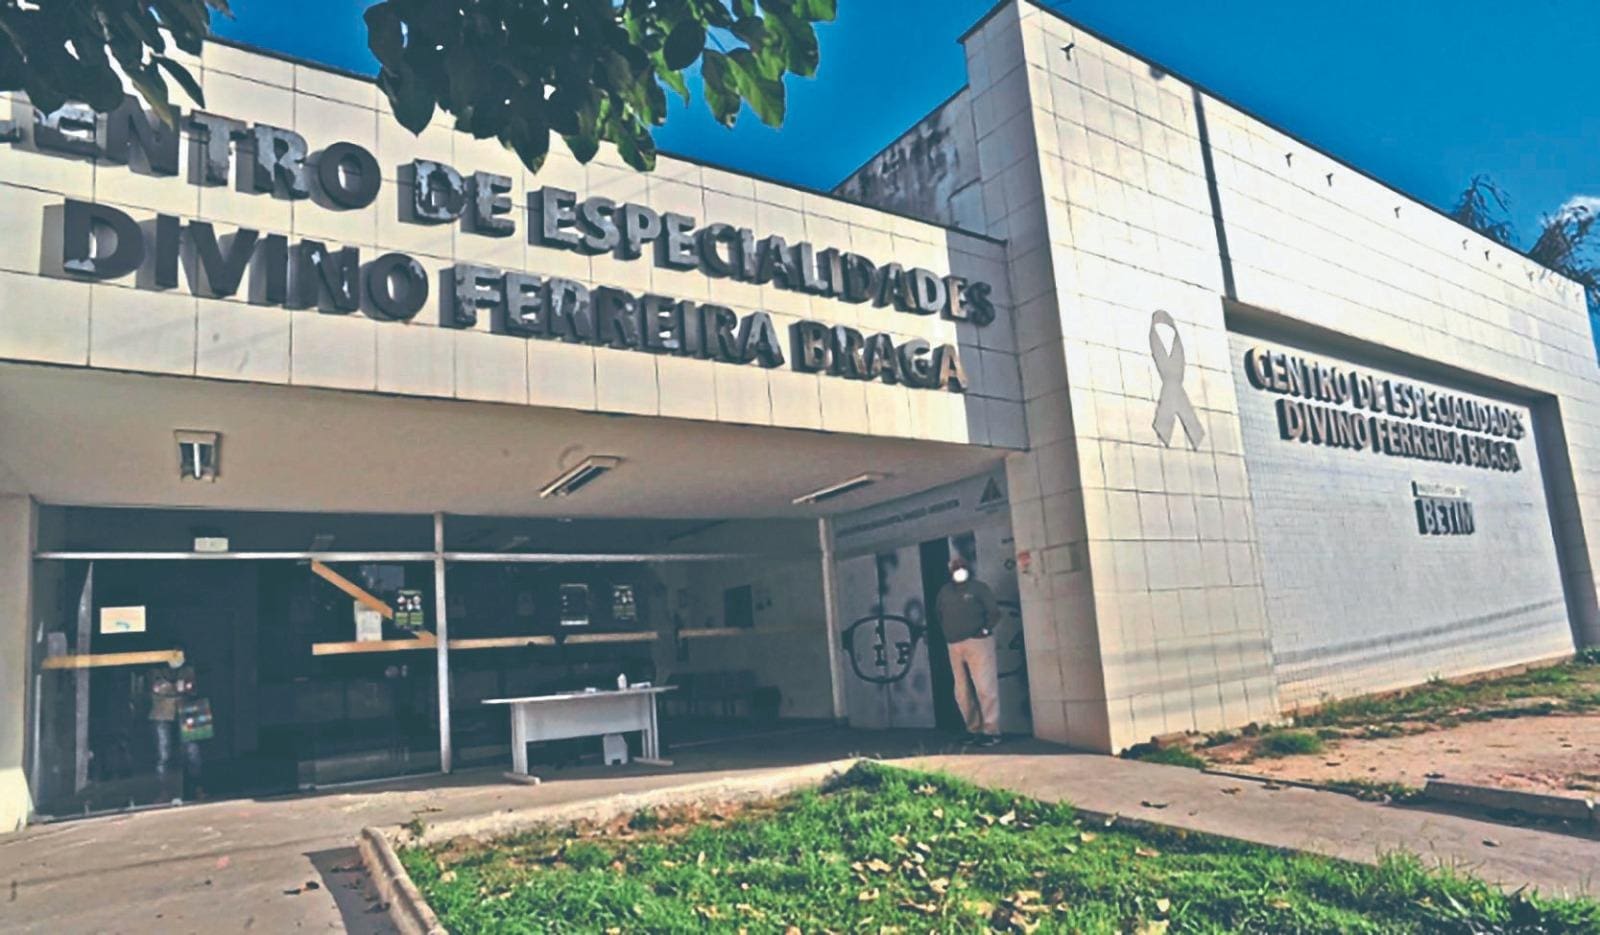 Realizadas no Centro de Especialidades Divino Ferreira Braga, as cirurgias são ambulatoriais, com aplicação de anestesia local e sem necessidade de internação